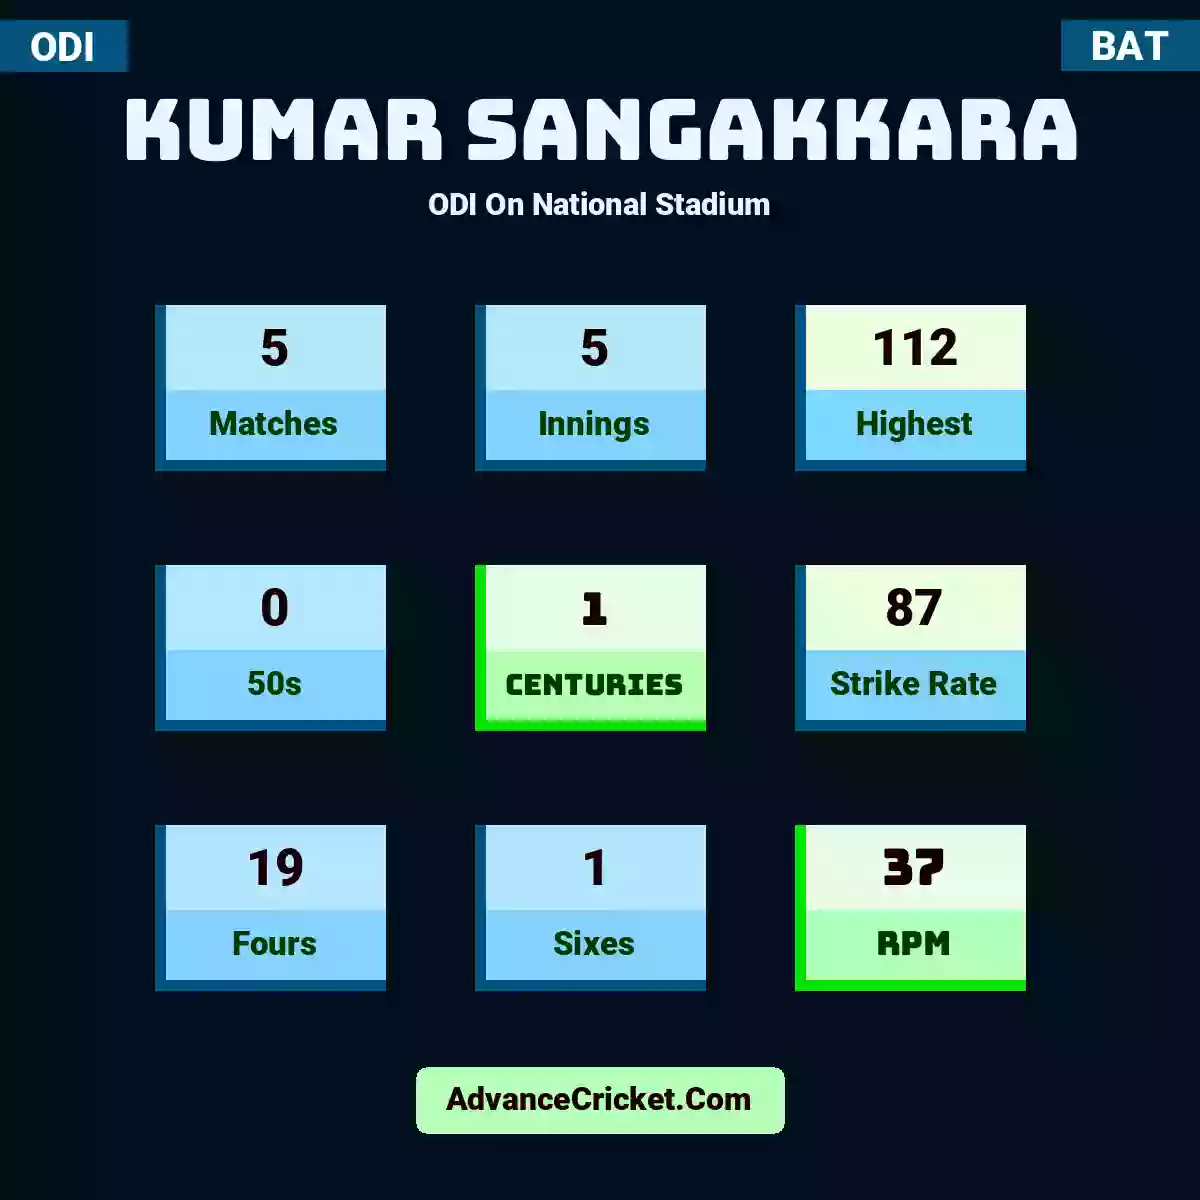 Kumar Sangakkara ODI  On National Stadium, Kumar Sangakkara played 5 matches, scored 112 runs as highest, 0 half-centuries, and 1 centuries, with a strike rate of 87. K.Sangakkara hit 19 fours and 1 sixes, with an RPM of 37.